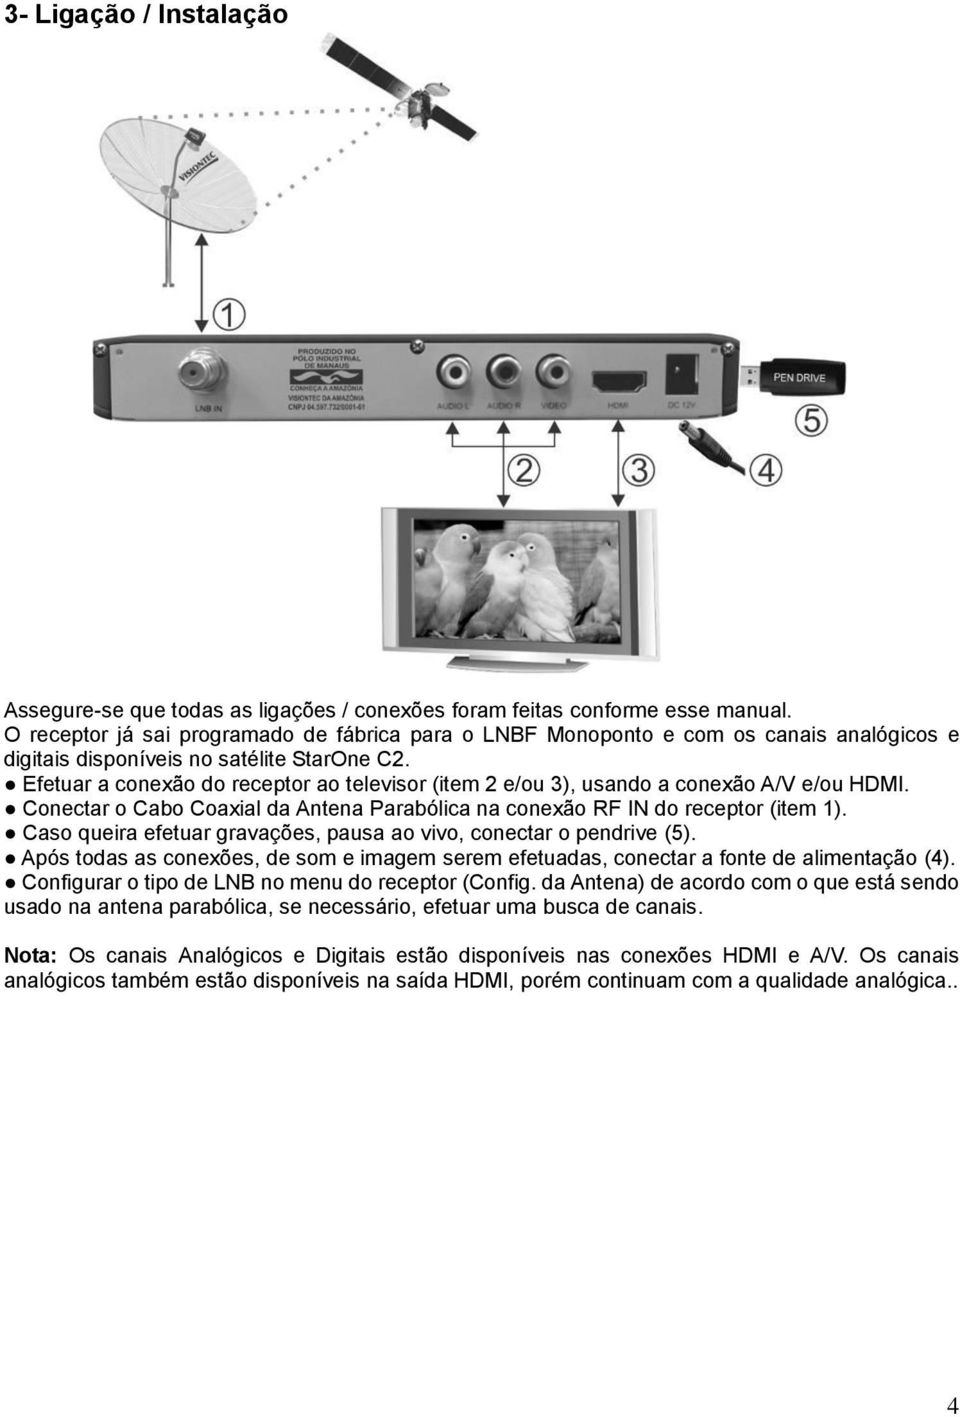 Efetuar a conexão do receptor ao televisor (item 2 e/ou 3), usando a conexão A/V e/ou HDMI. Conectar o Cabo Coaxial da Antena Parabólica na conexão RF IN do receptor (item 1).